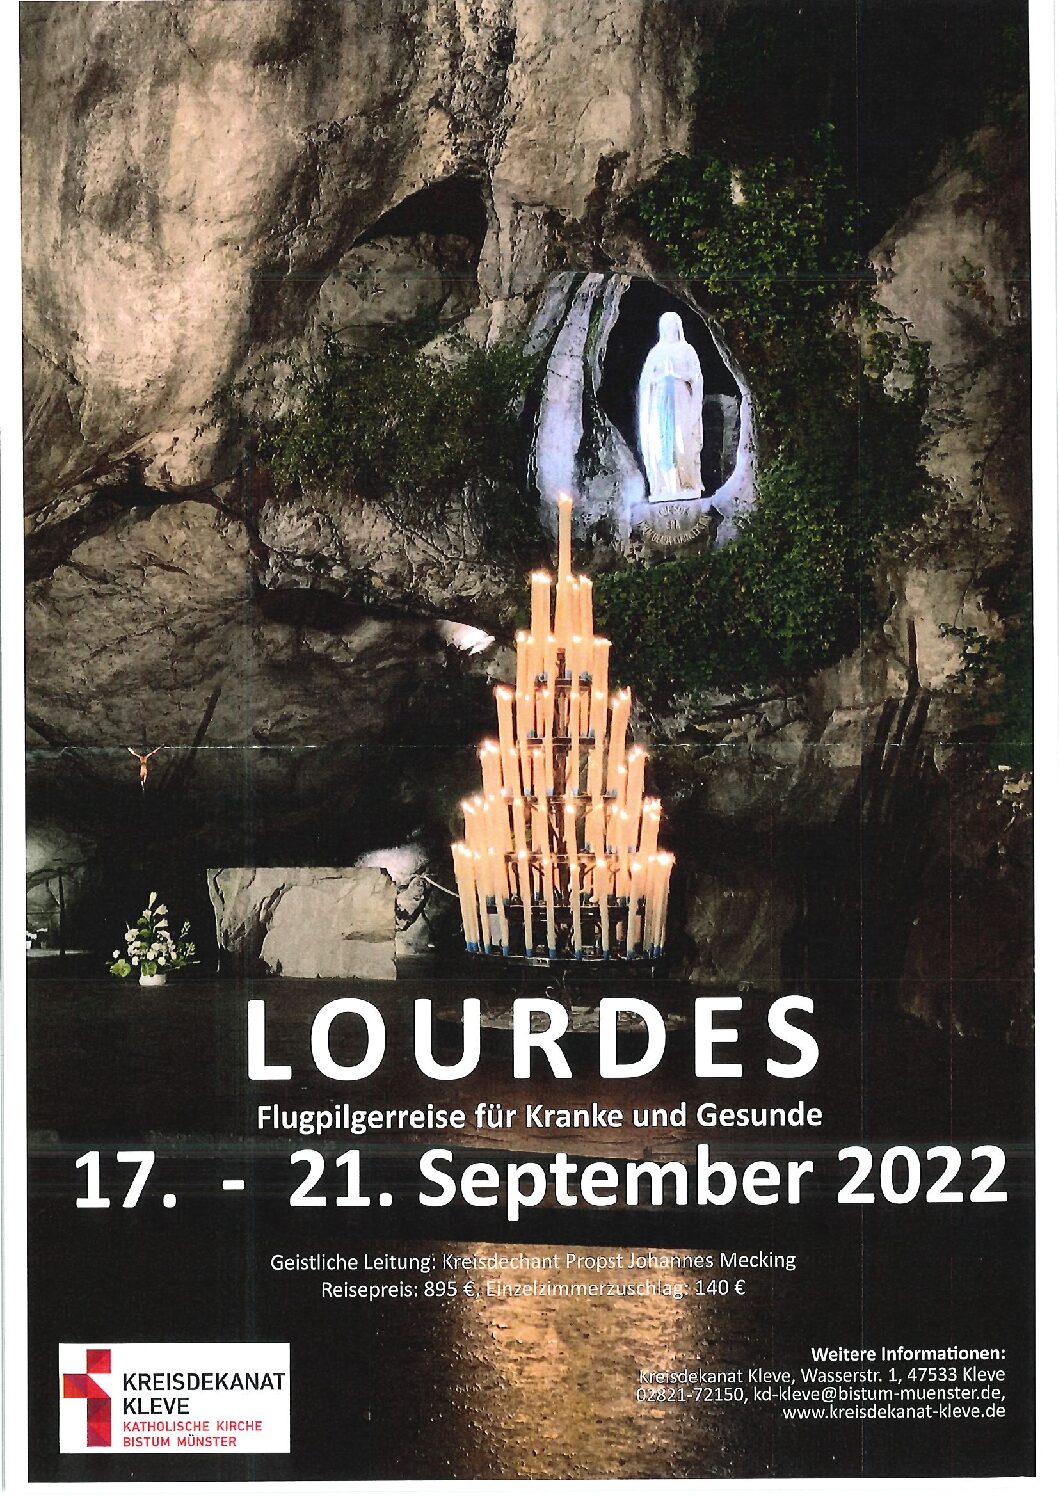 Pilgerreise nach Lourdes